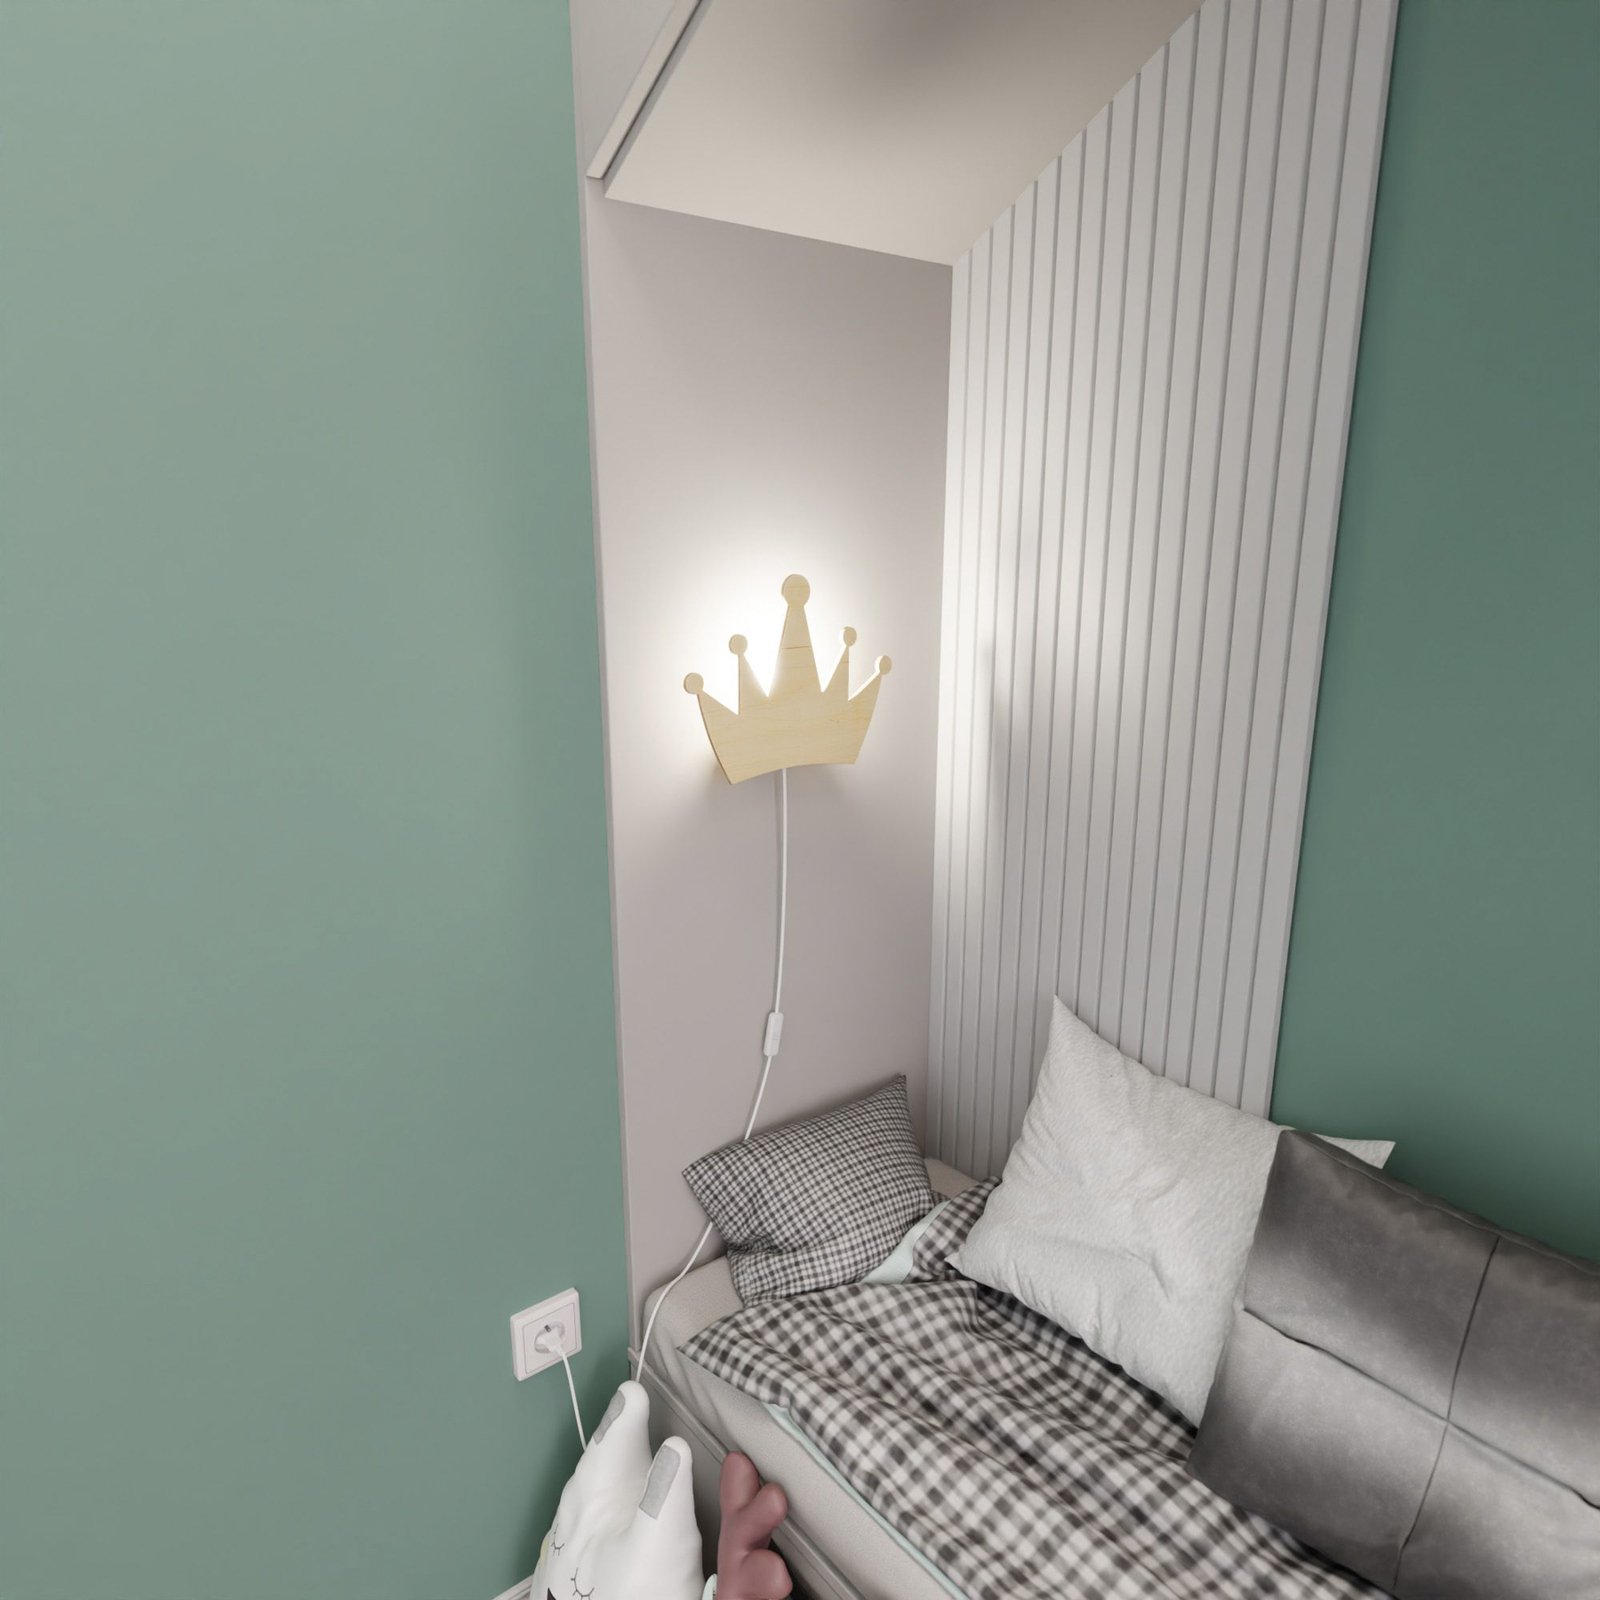 Queen fali lámpa, fából, konnektorral és kapcsolóval